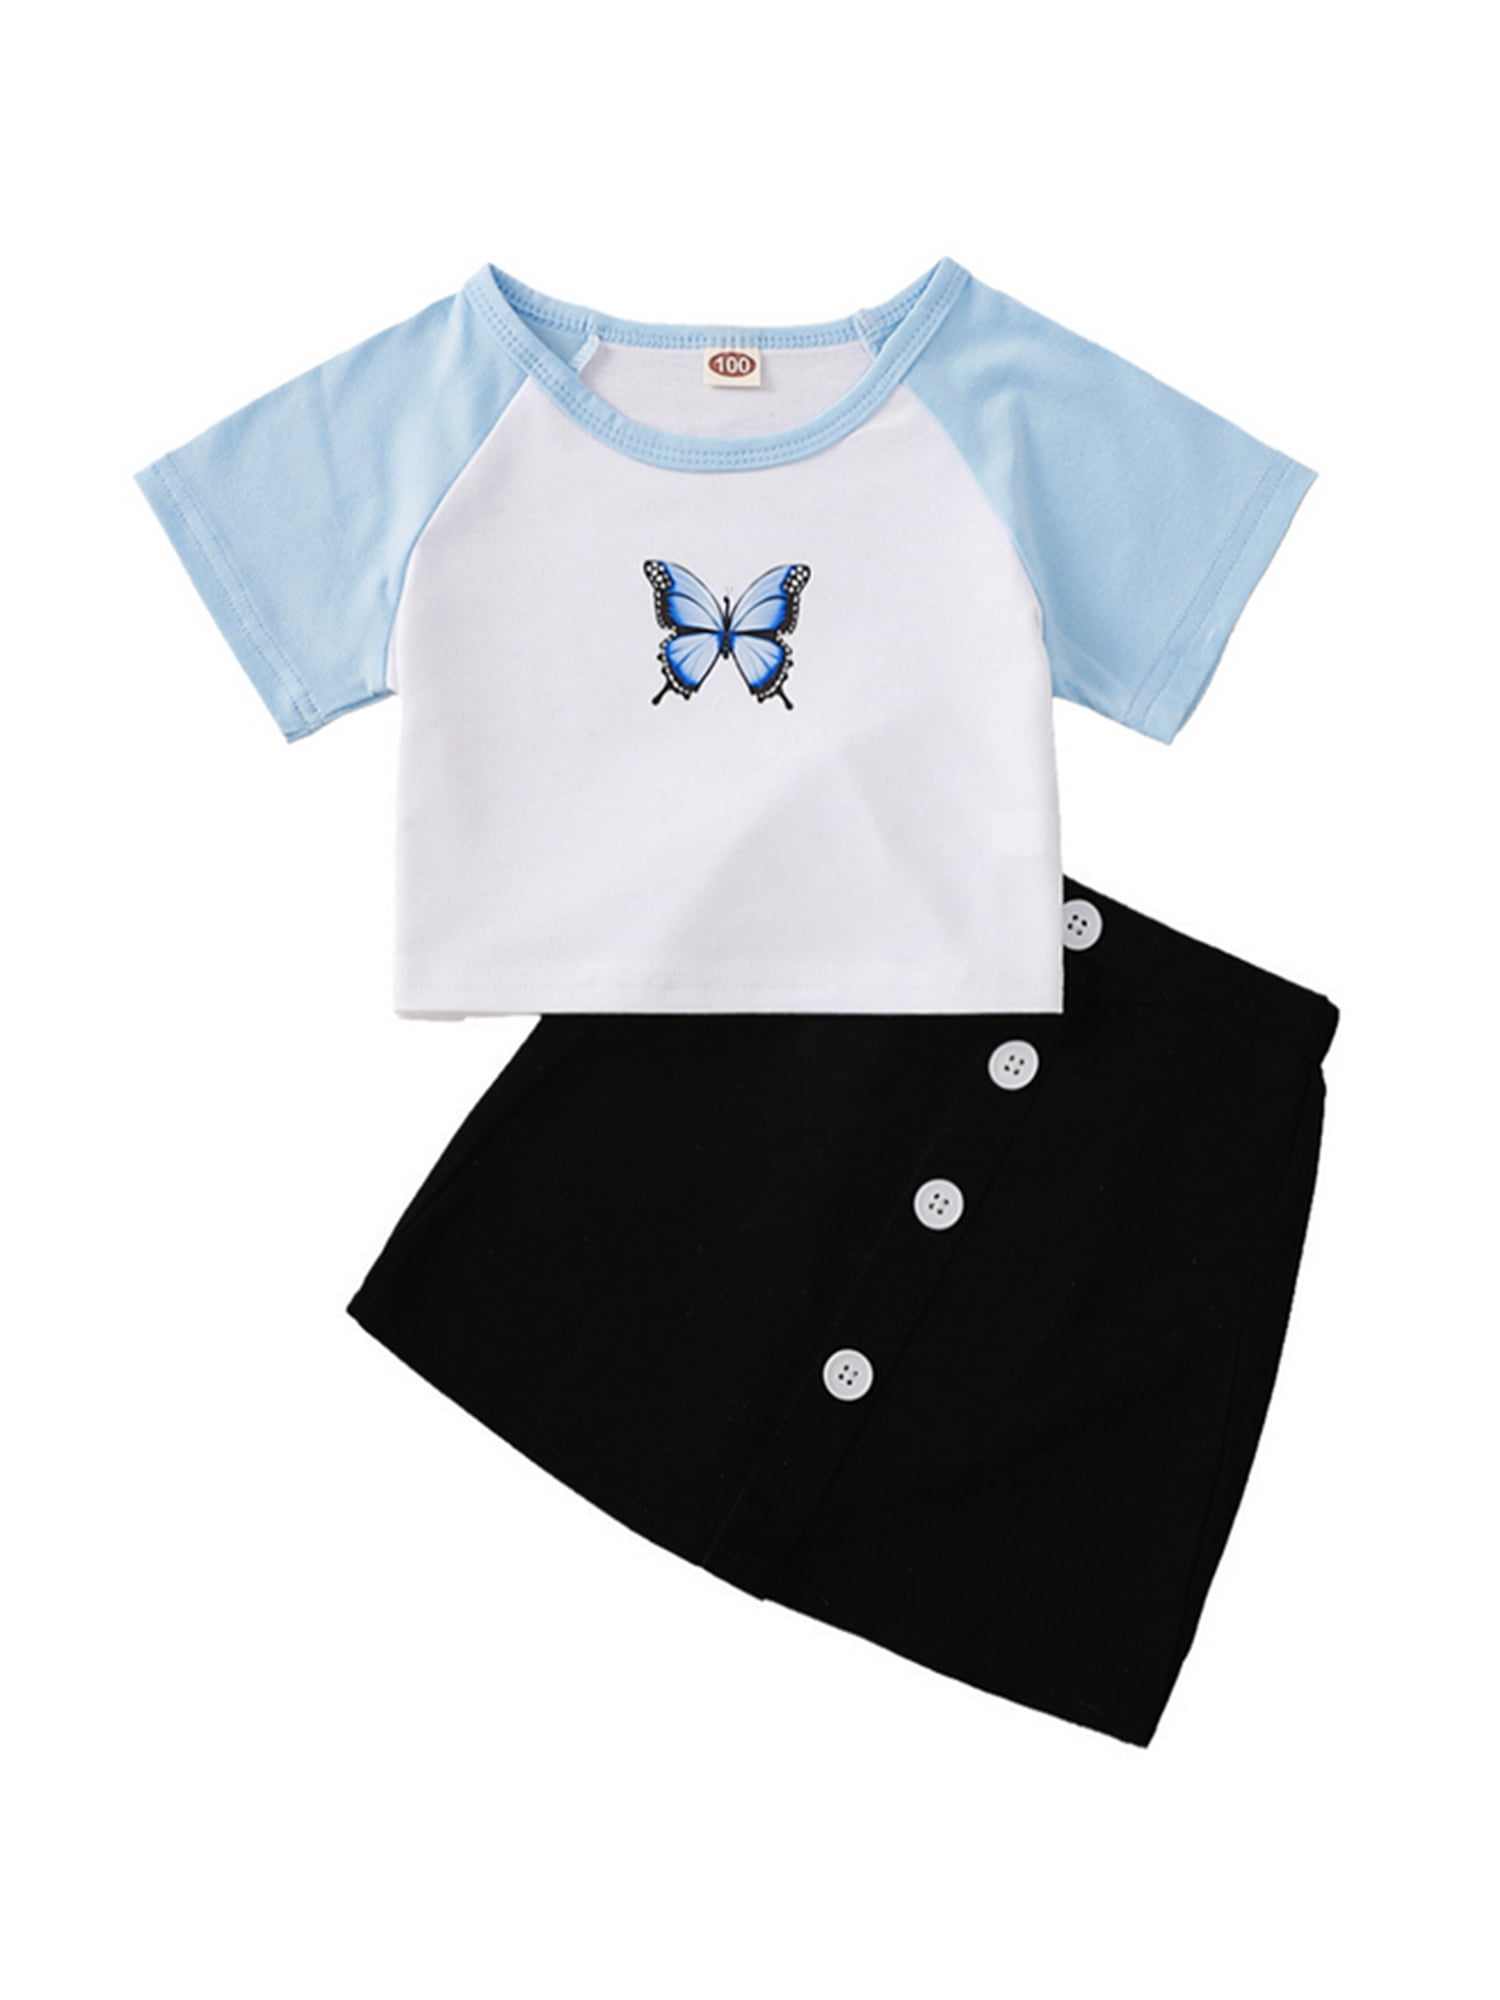 Shorts Kids Tales Little Girls Outfits Set Cotton Short Sleeve Ruffle T-Shirt